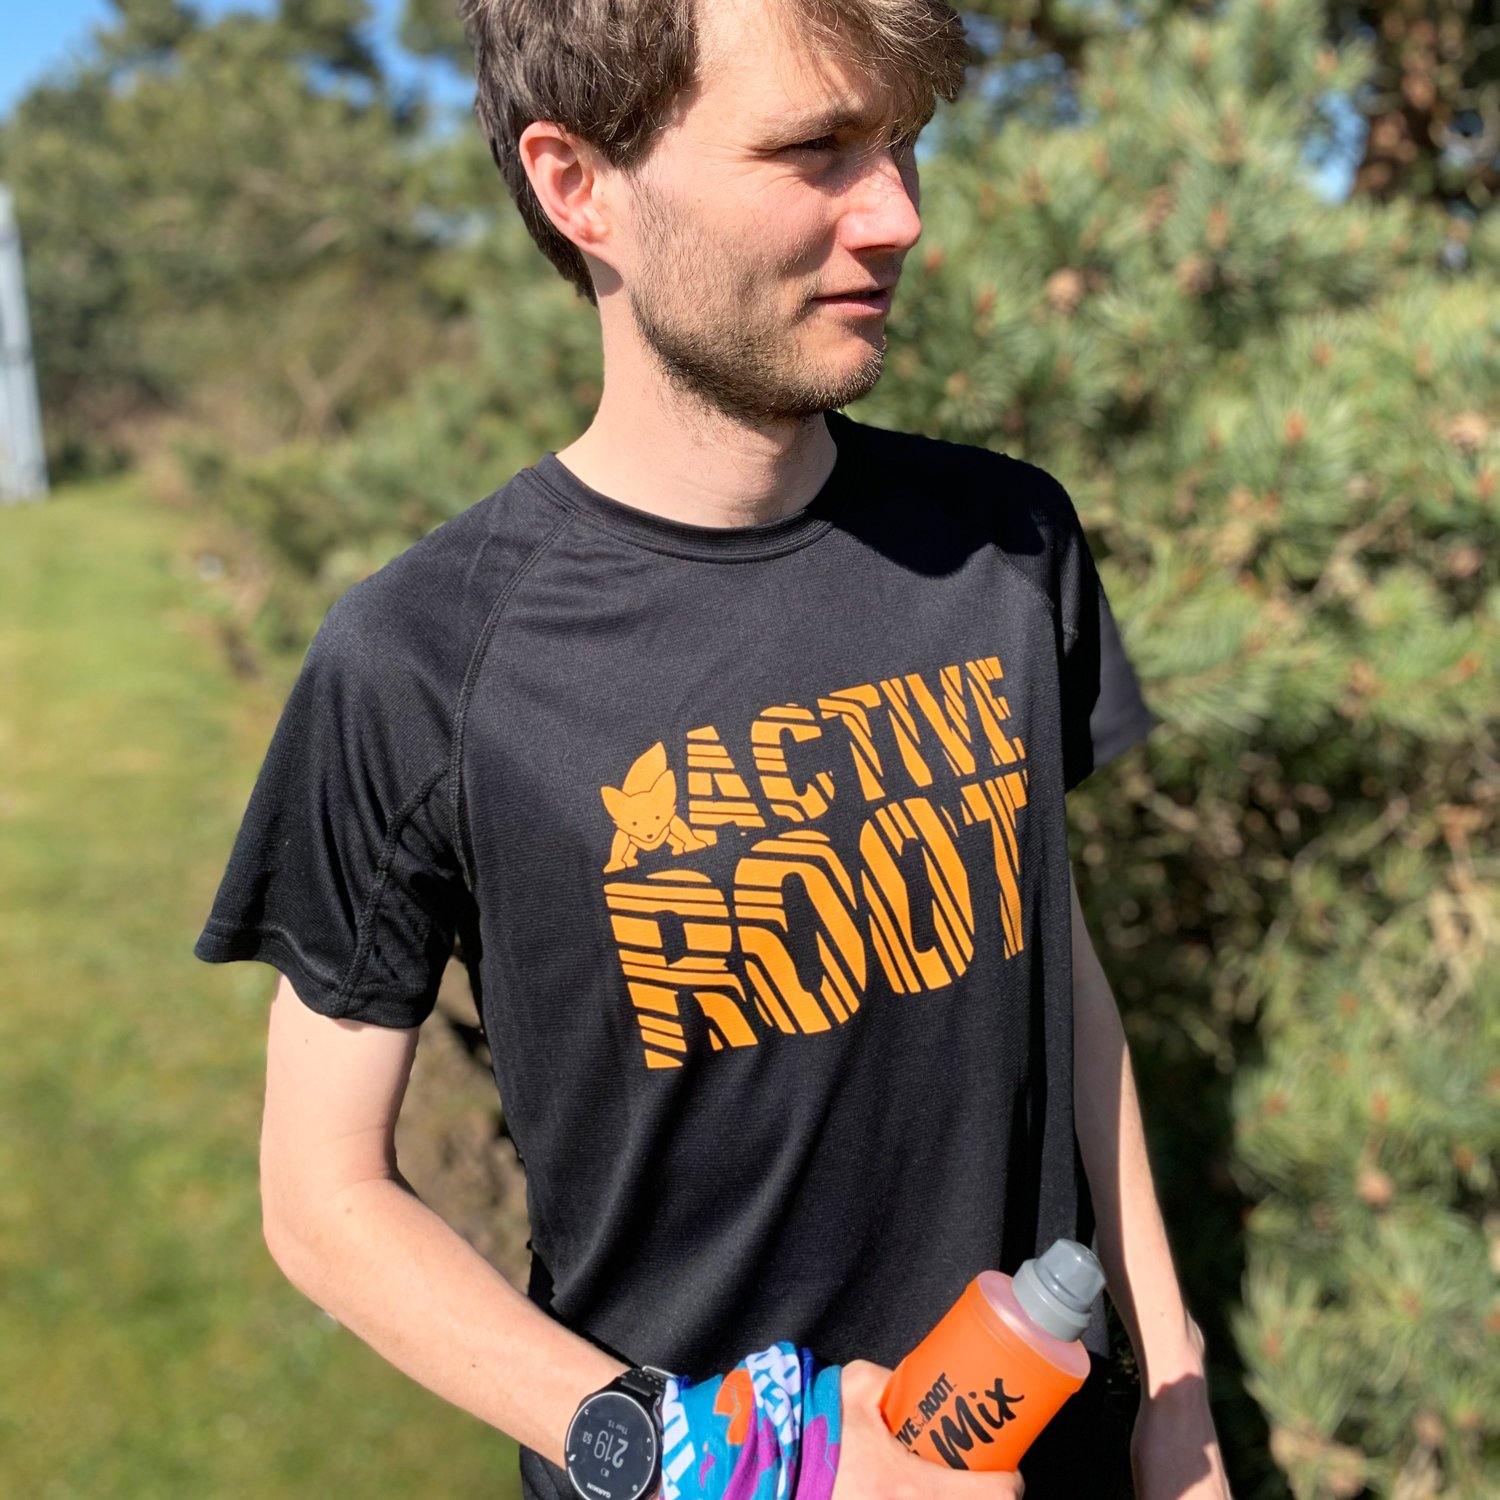 Men's Active Root Black / Orange Racing Stripe T-Shirt - Active Root